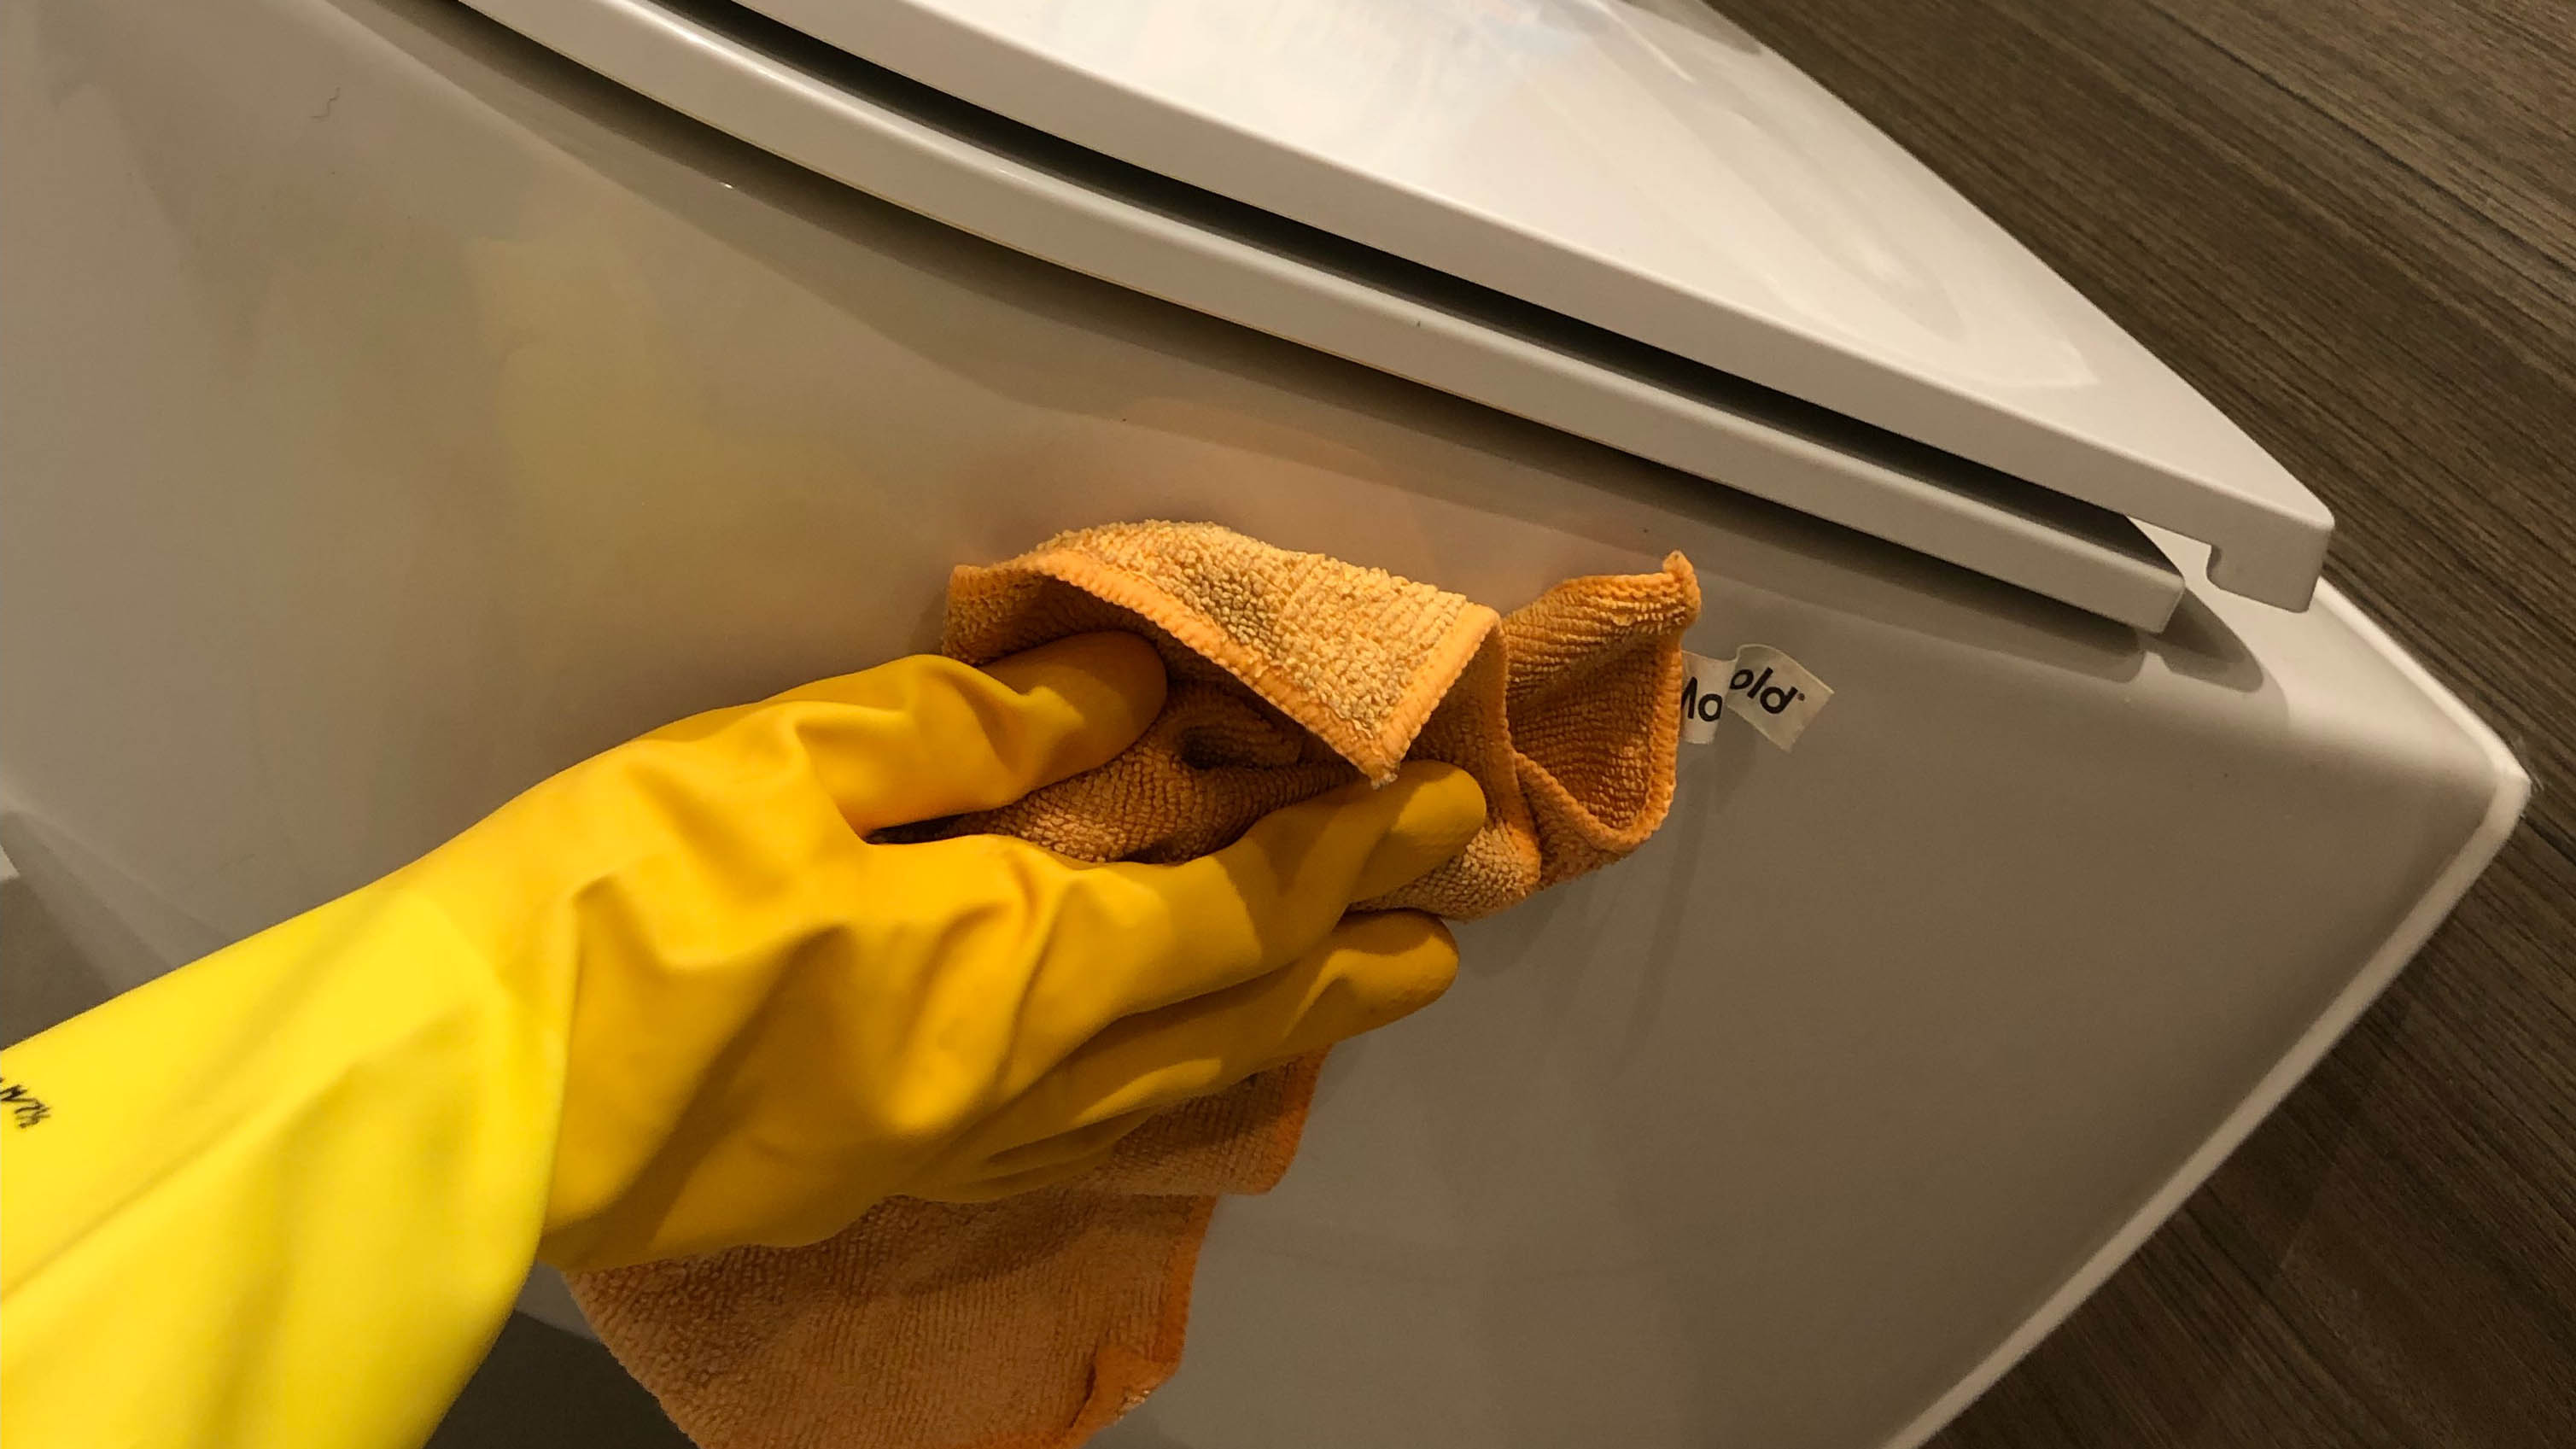 Салфетка из микрофибры используется для очистки боковой части унитаза в резиновых перчатках.